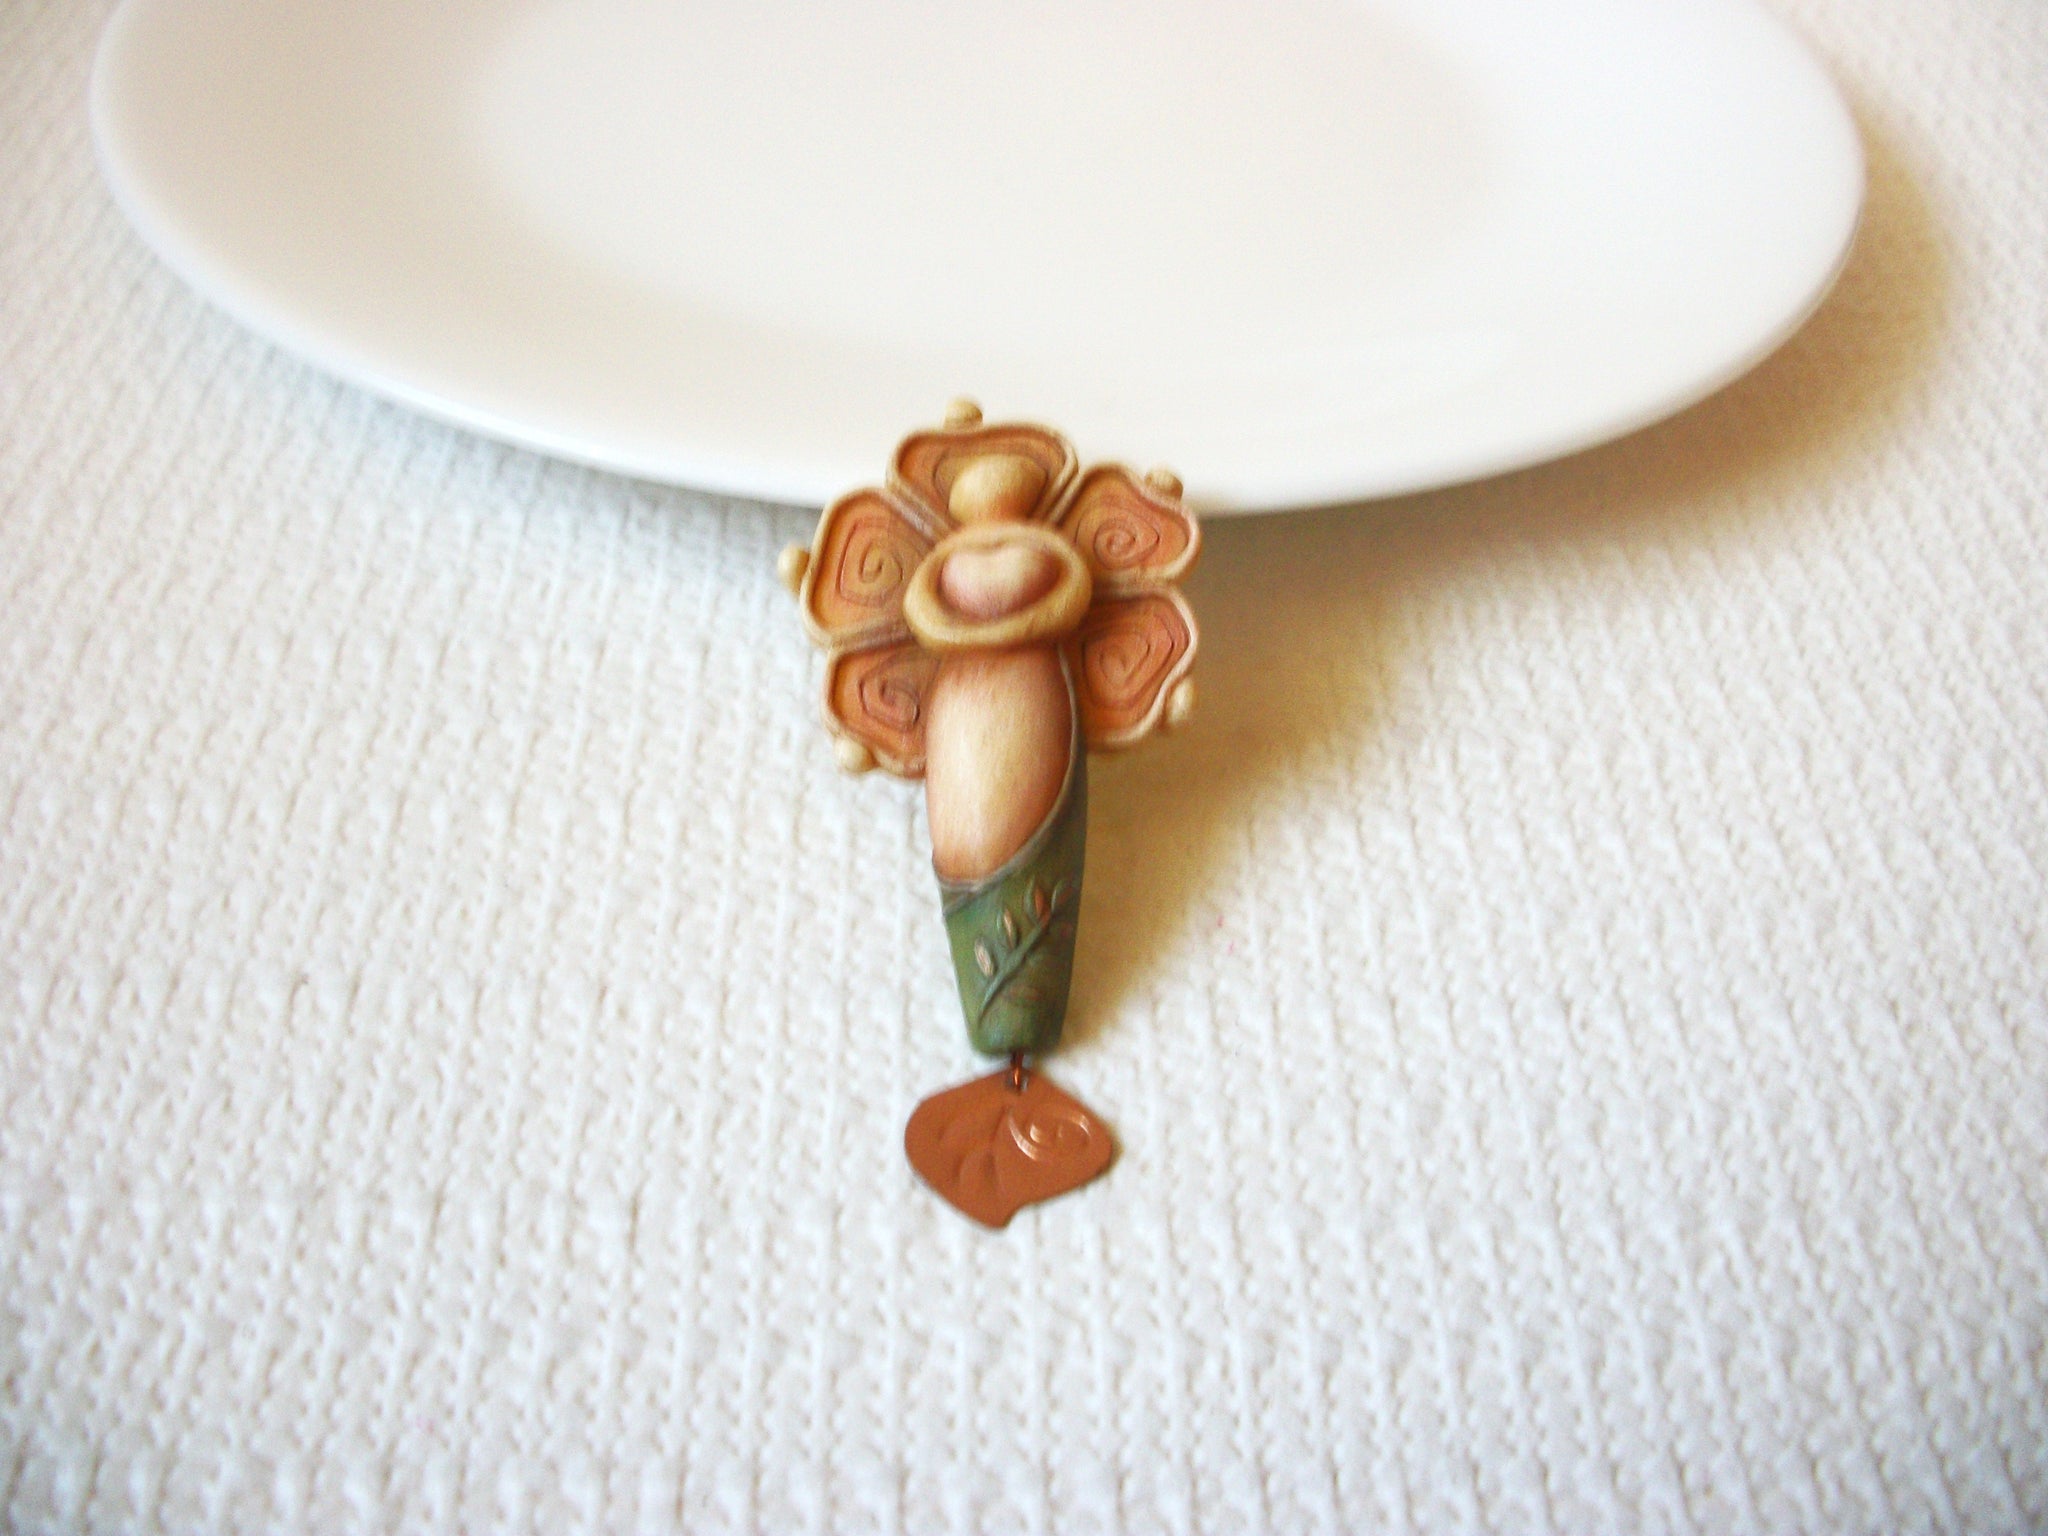 Vintage Mermaid Copper Brooch Pin 71218D